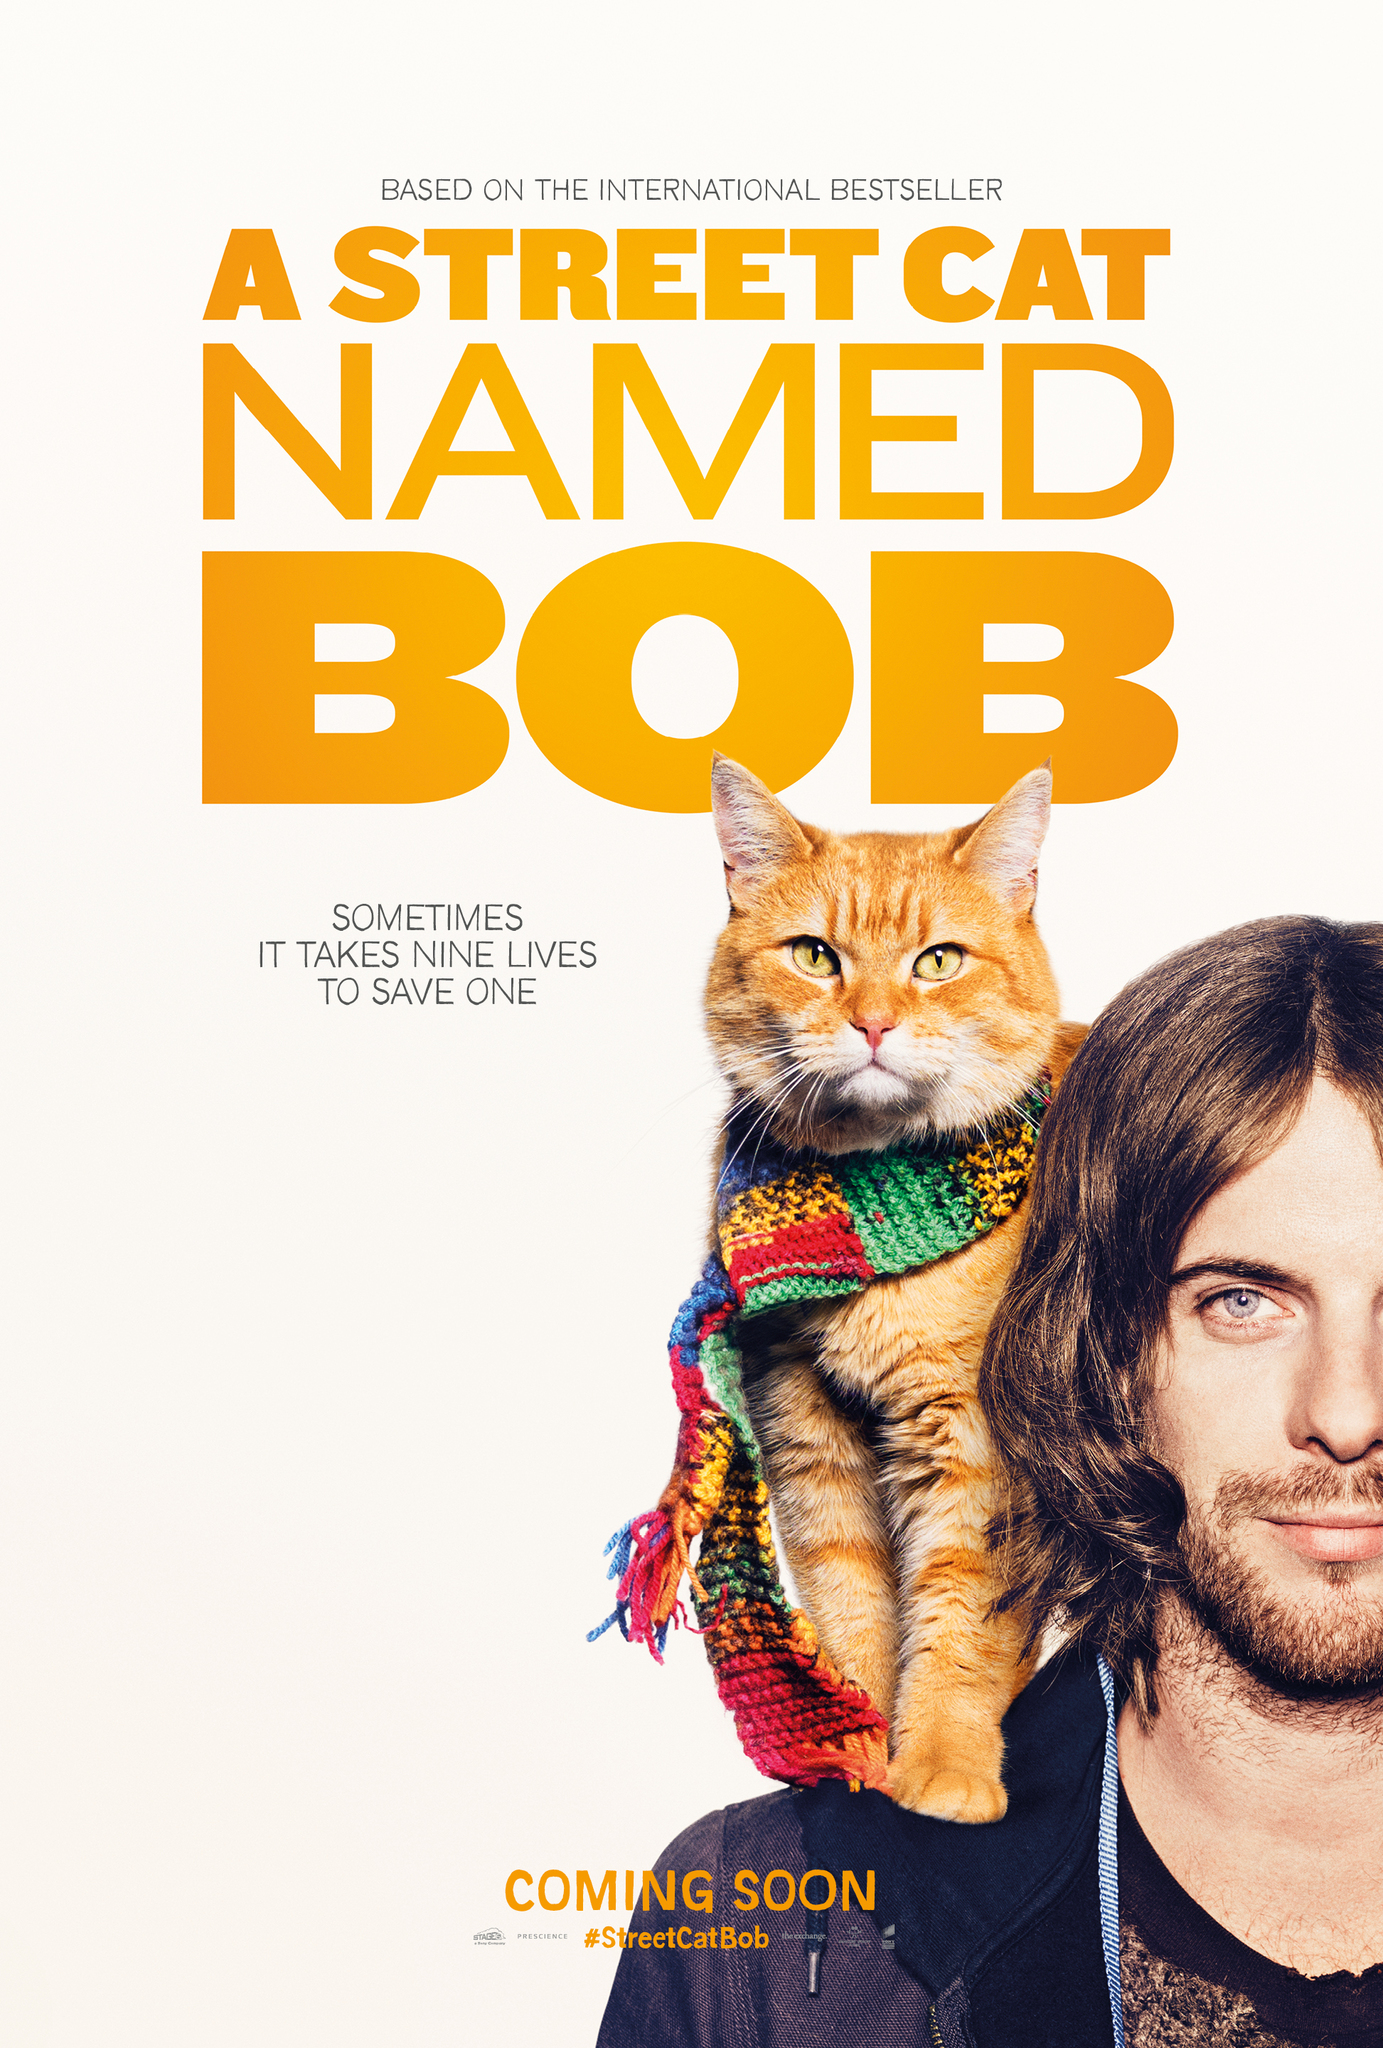 ดูหนังออนไลน์ฟรี A Street Cat Named Bob 2016 บ๊อบ แมว เพื่อน คน